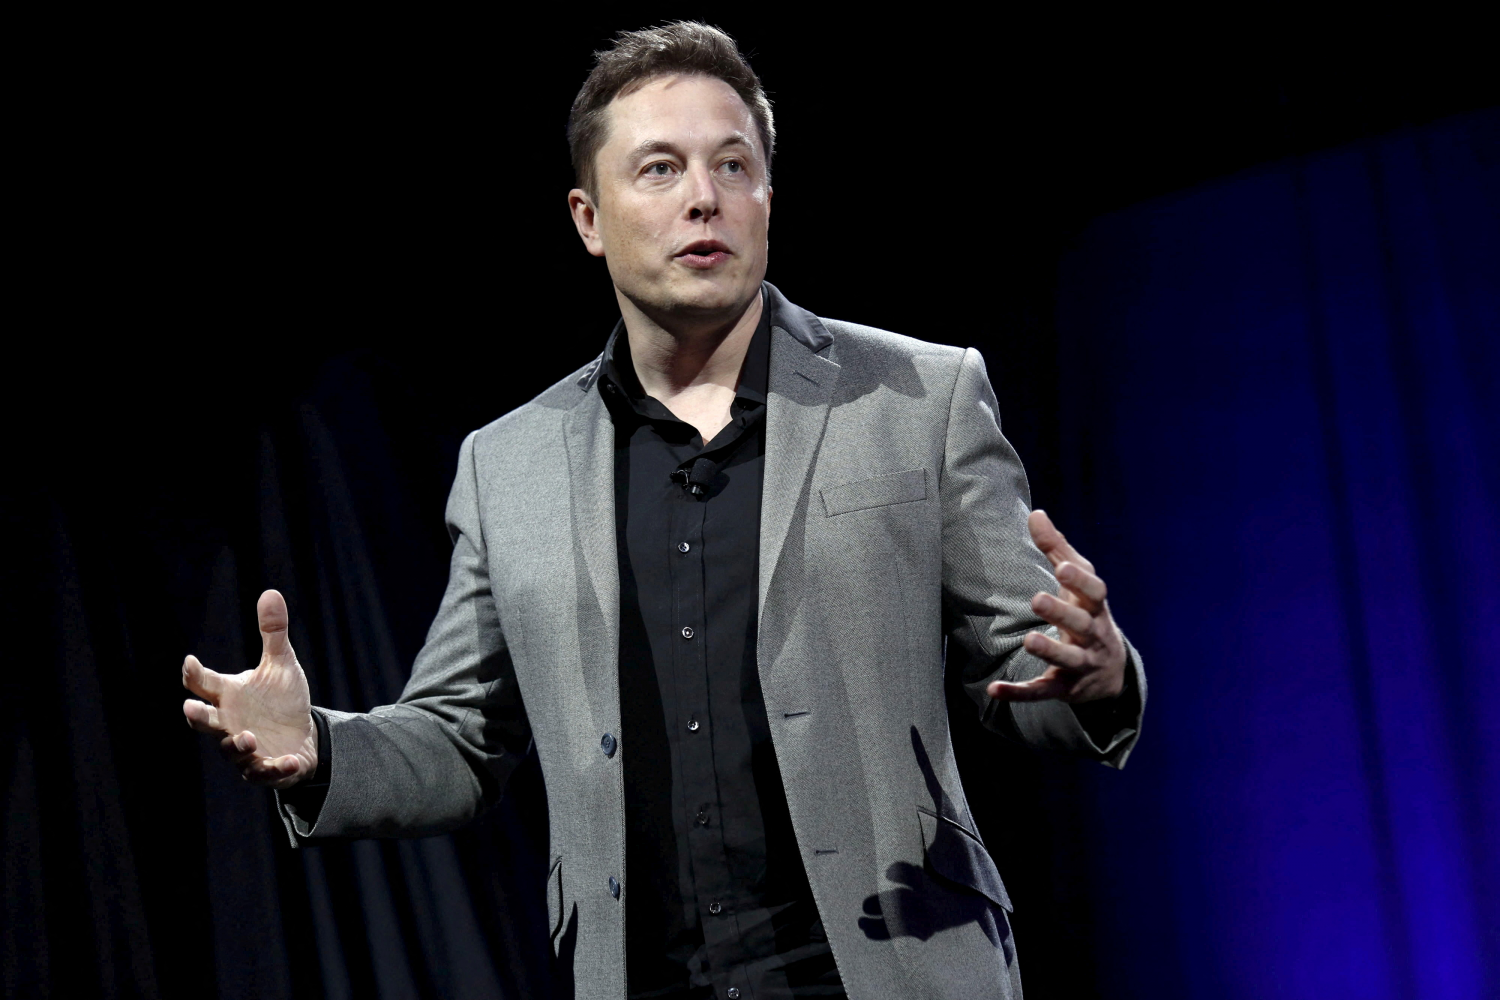 Tỷ phú Elon Musk – biểu tượng của đổi mới & sáng tạo